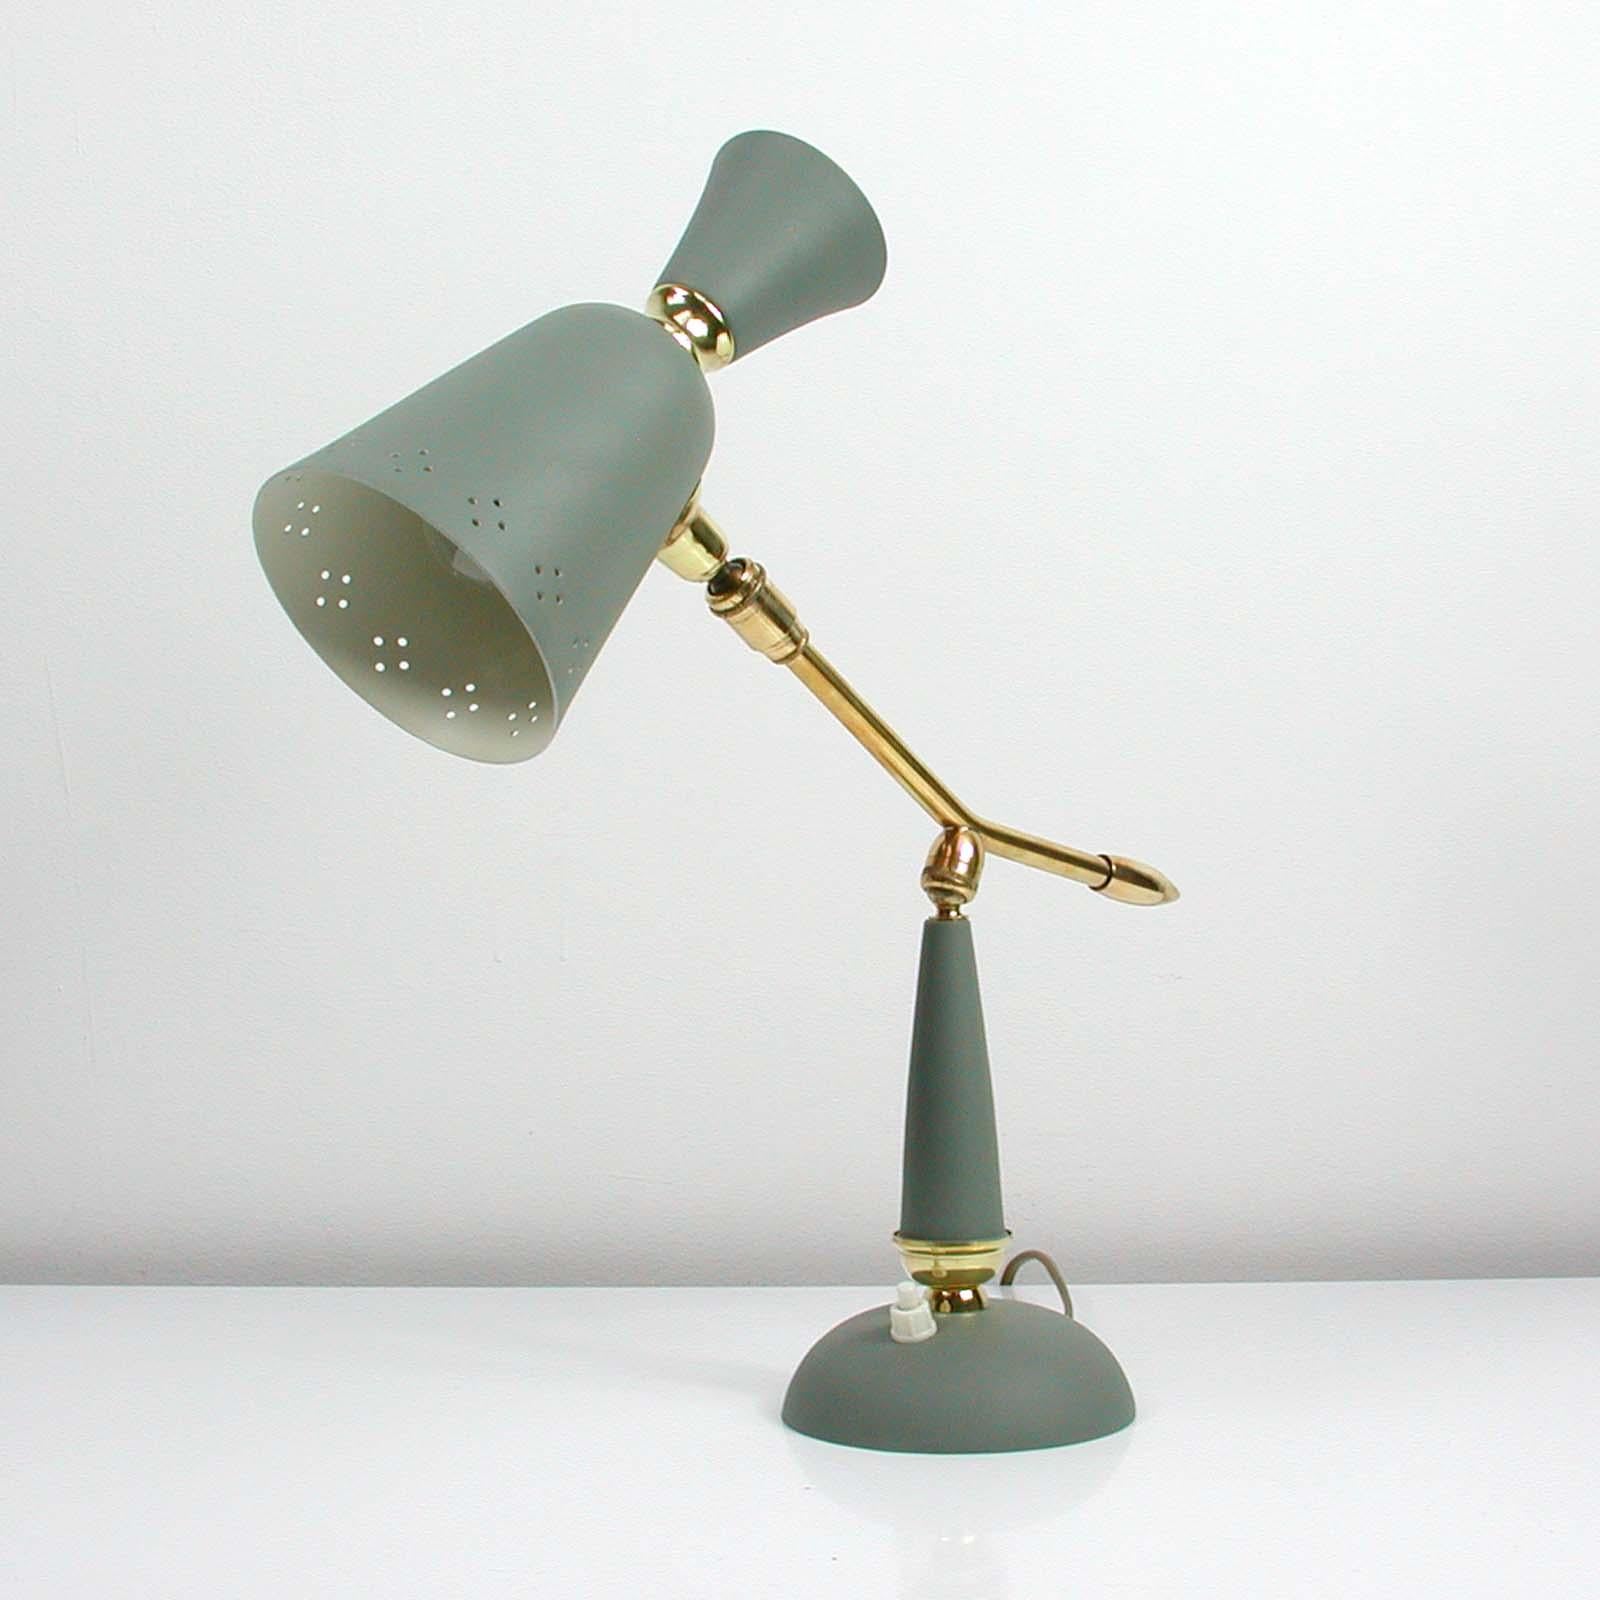 Diese Vintage-Tischlampe aus der Mitte des Jahrhunderts wurde in den 1950er Jahren in Frankreich hergestellt. Sie ist aus grau lackiertem Metall gefertigt und hat einen verstellbaren Lampenarm aus Messing und einen verstellbaren Lampenschirm.

Die